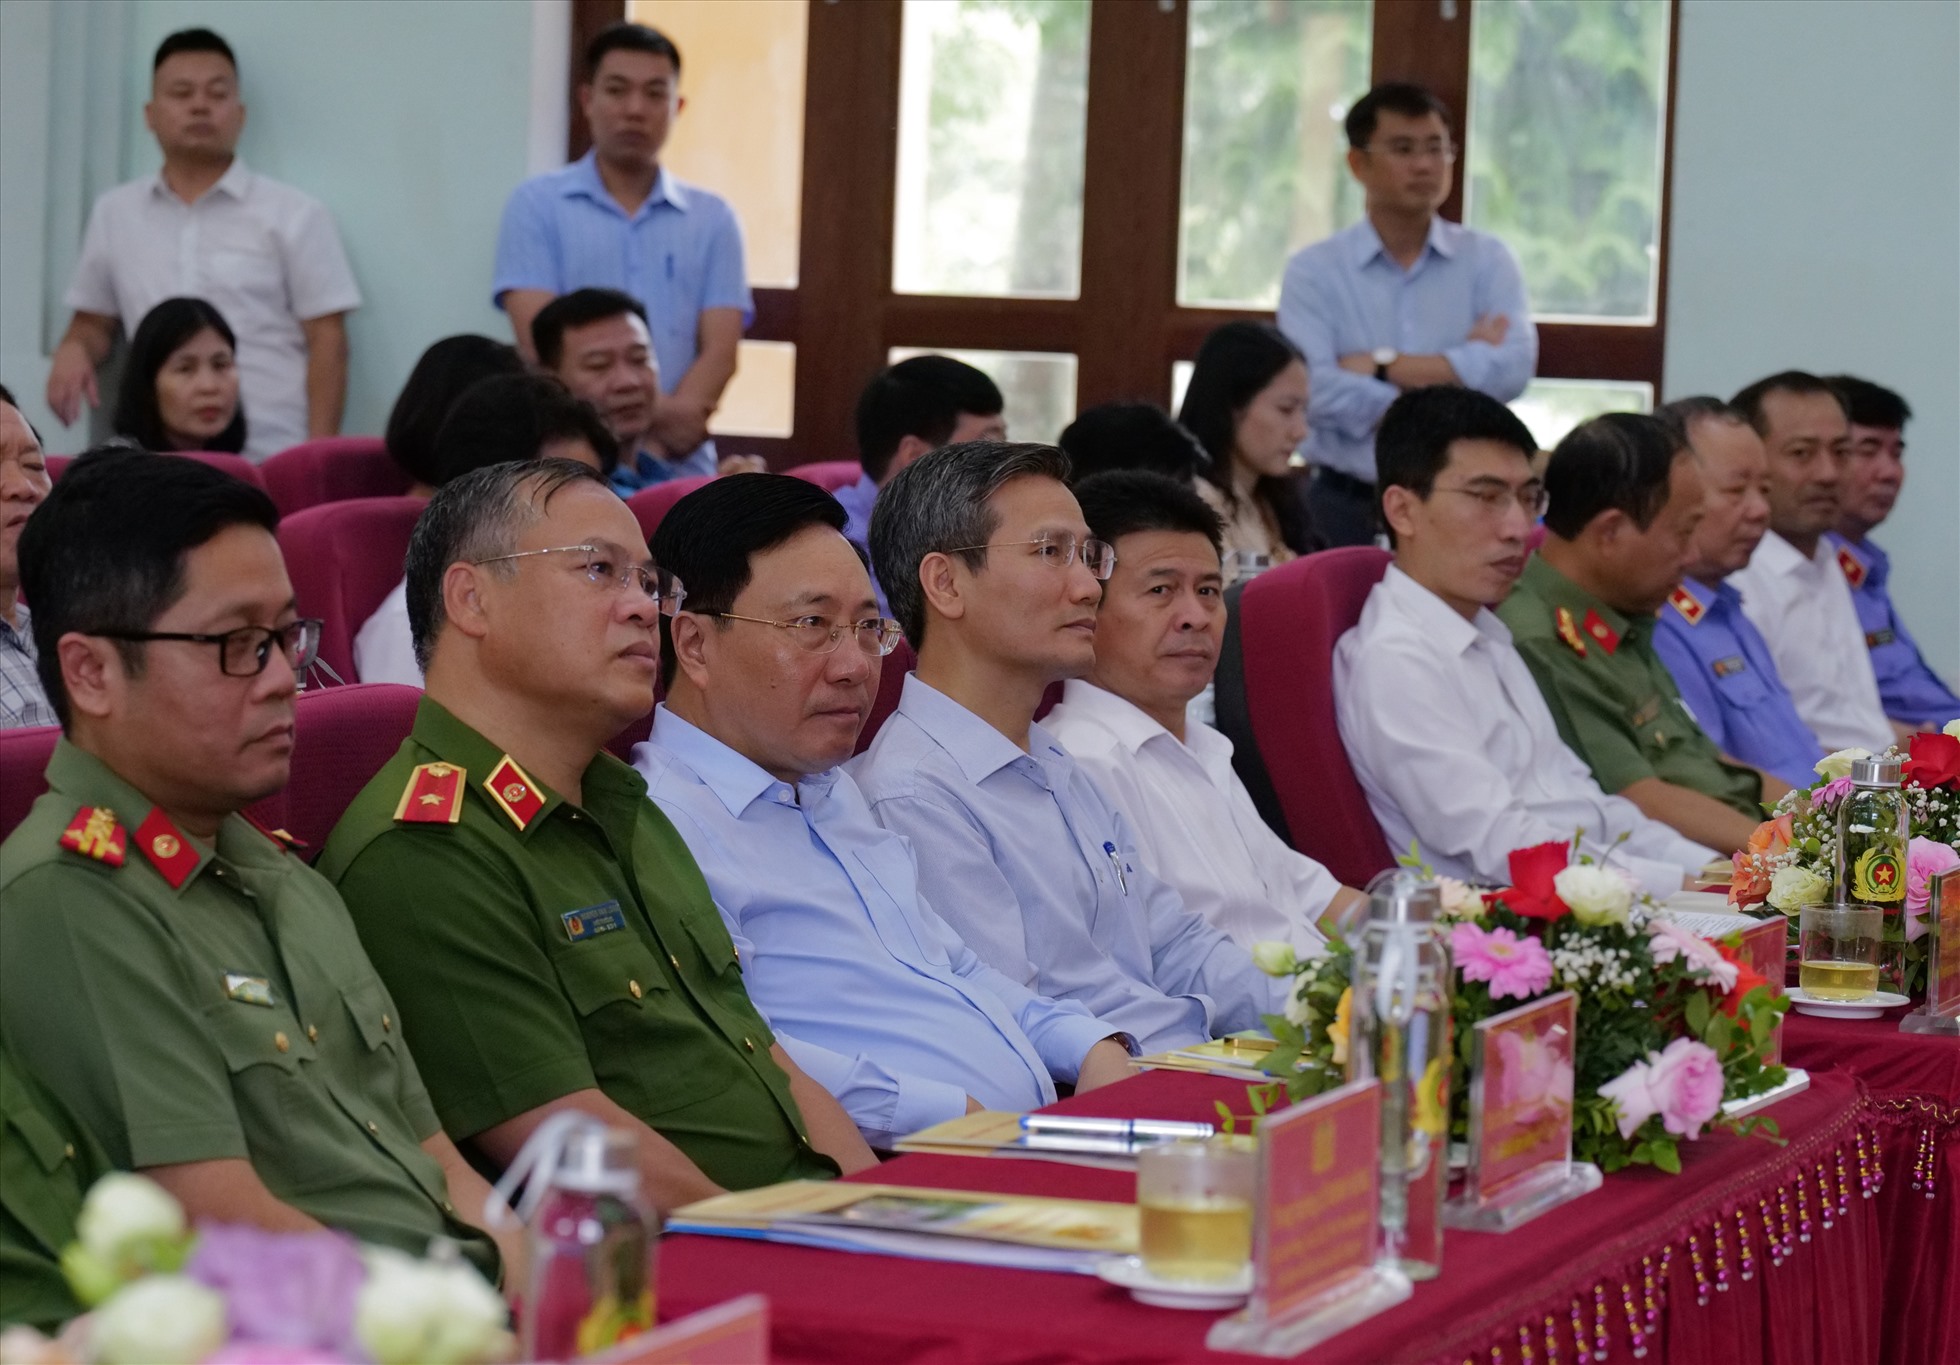 Phó Thủ tướng Phạm Bình Minh thứ ba từ trái qua tại buổi công bố đặc xá của Trại giam Vĩnh Quang Bộ Công an. Ảnh: V.D